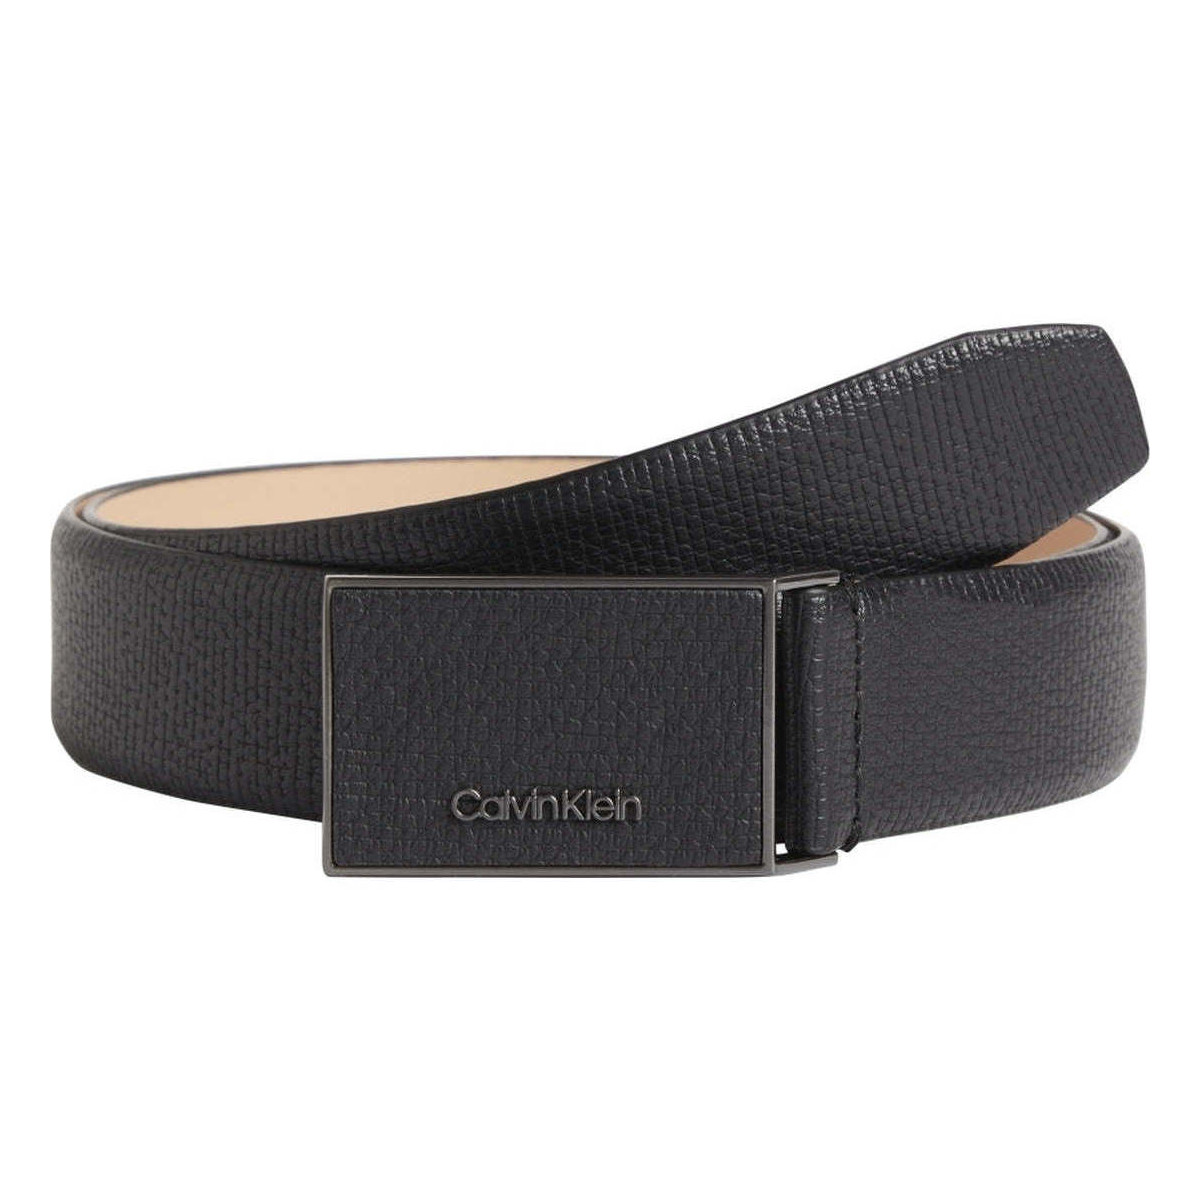 Accessoires textile Homme Calvin Klein Short de bain avec bande à logo Noir leather inlay plaque pal 35mm belts Noir